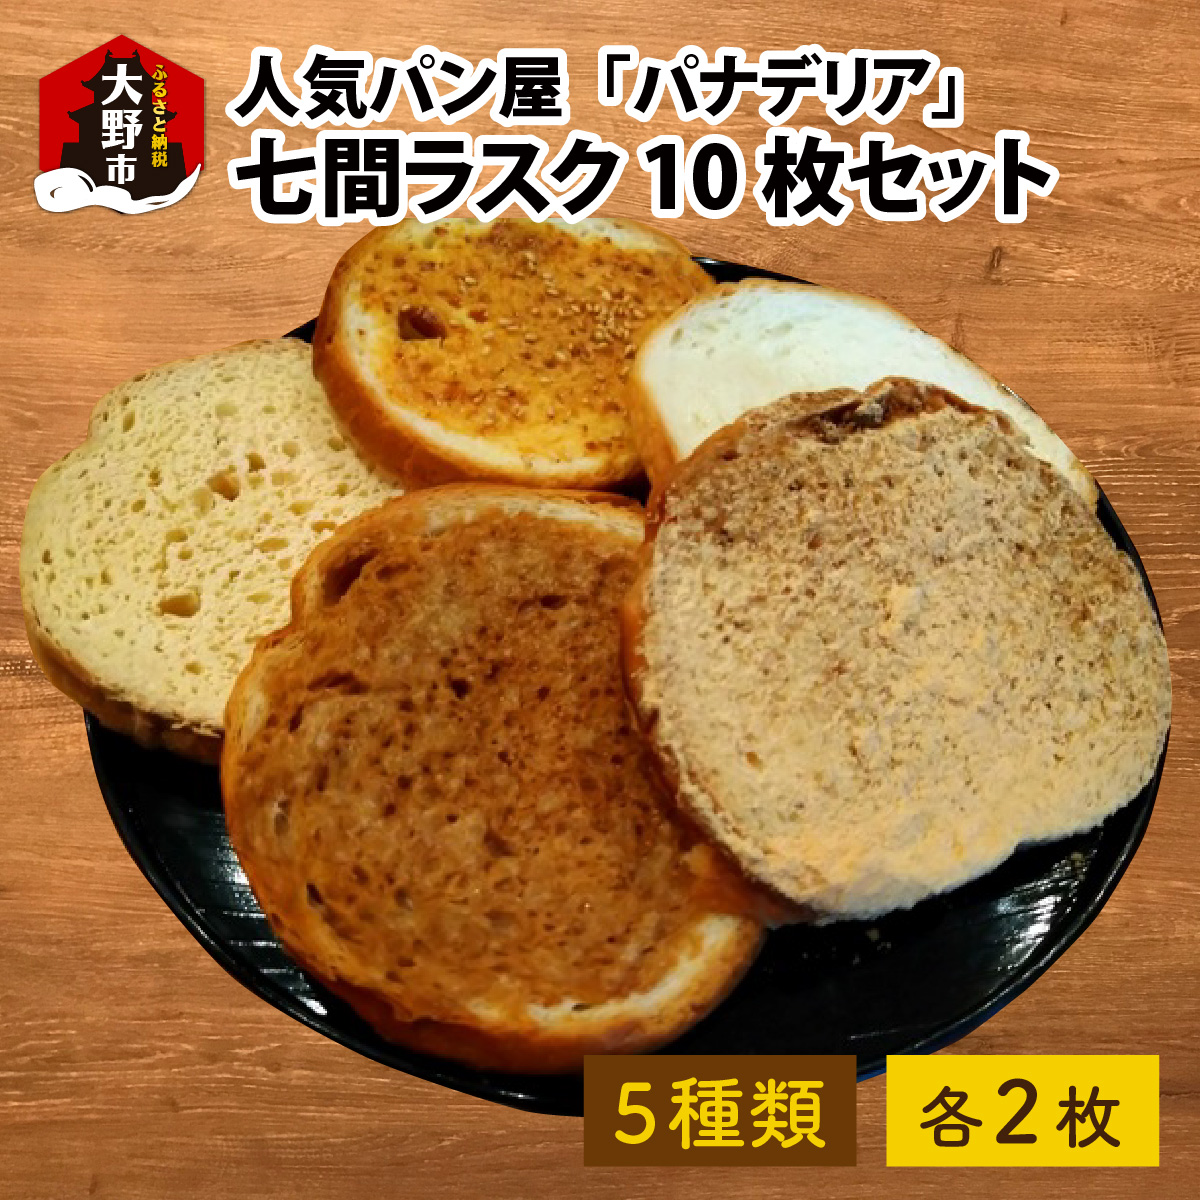 【A-087003】人気パン屋「パナデリア」の七間ラスク 10枚セット